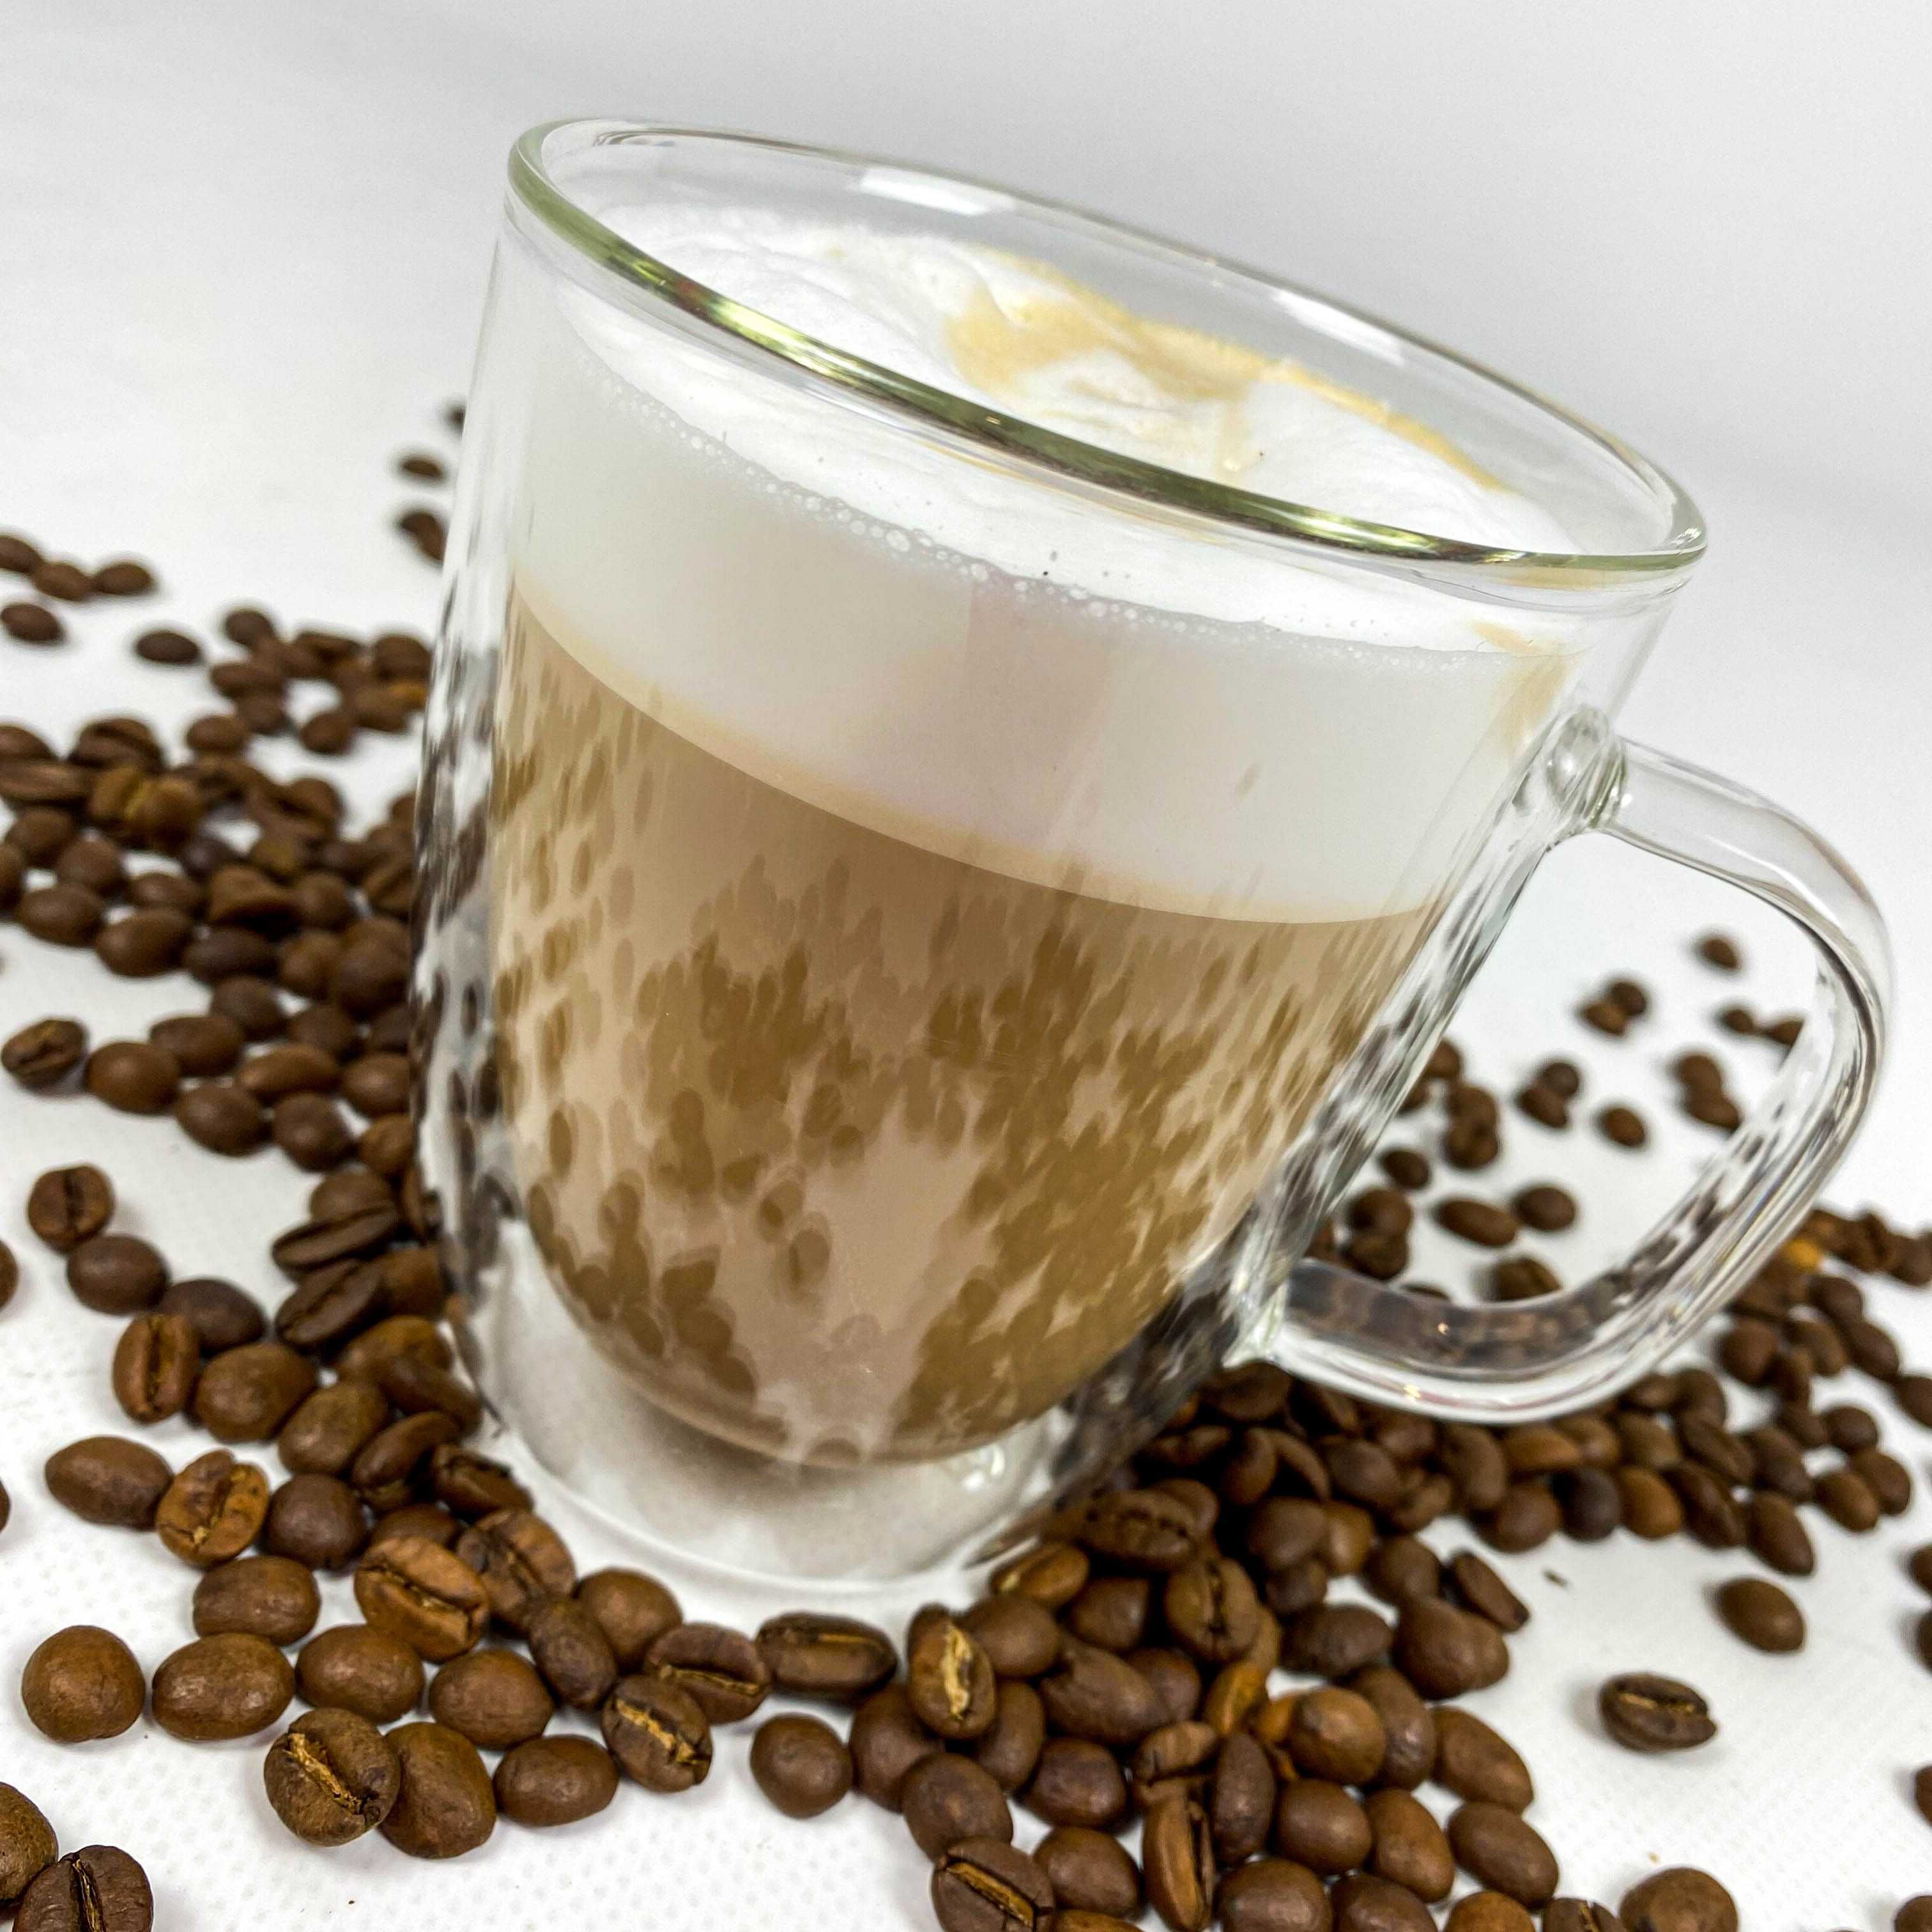 Speciality АРАБИКА Колумбия 100% кофе в зернах. Свежеобжаренный Кава